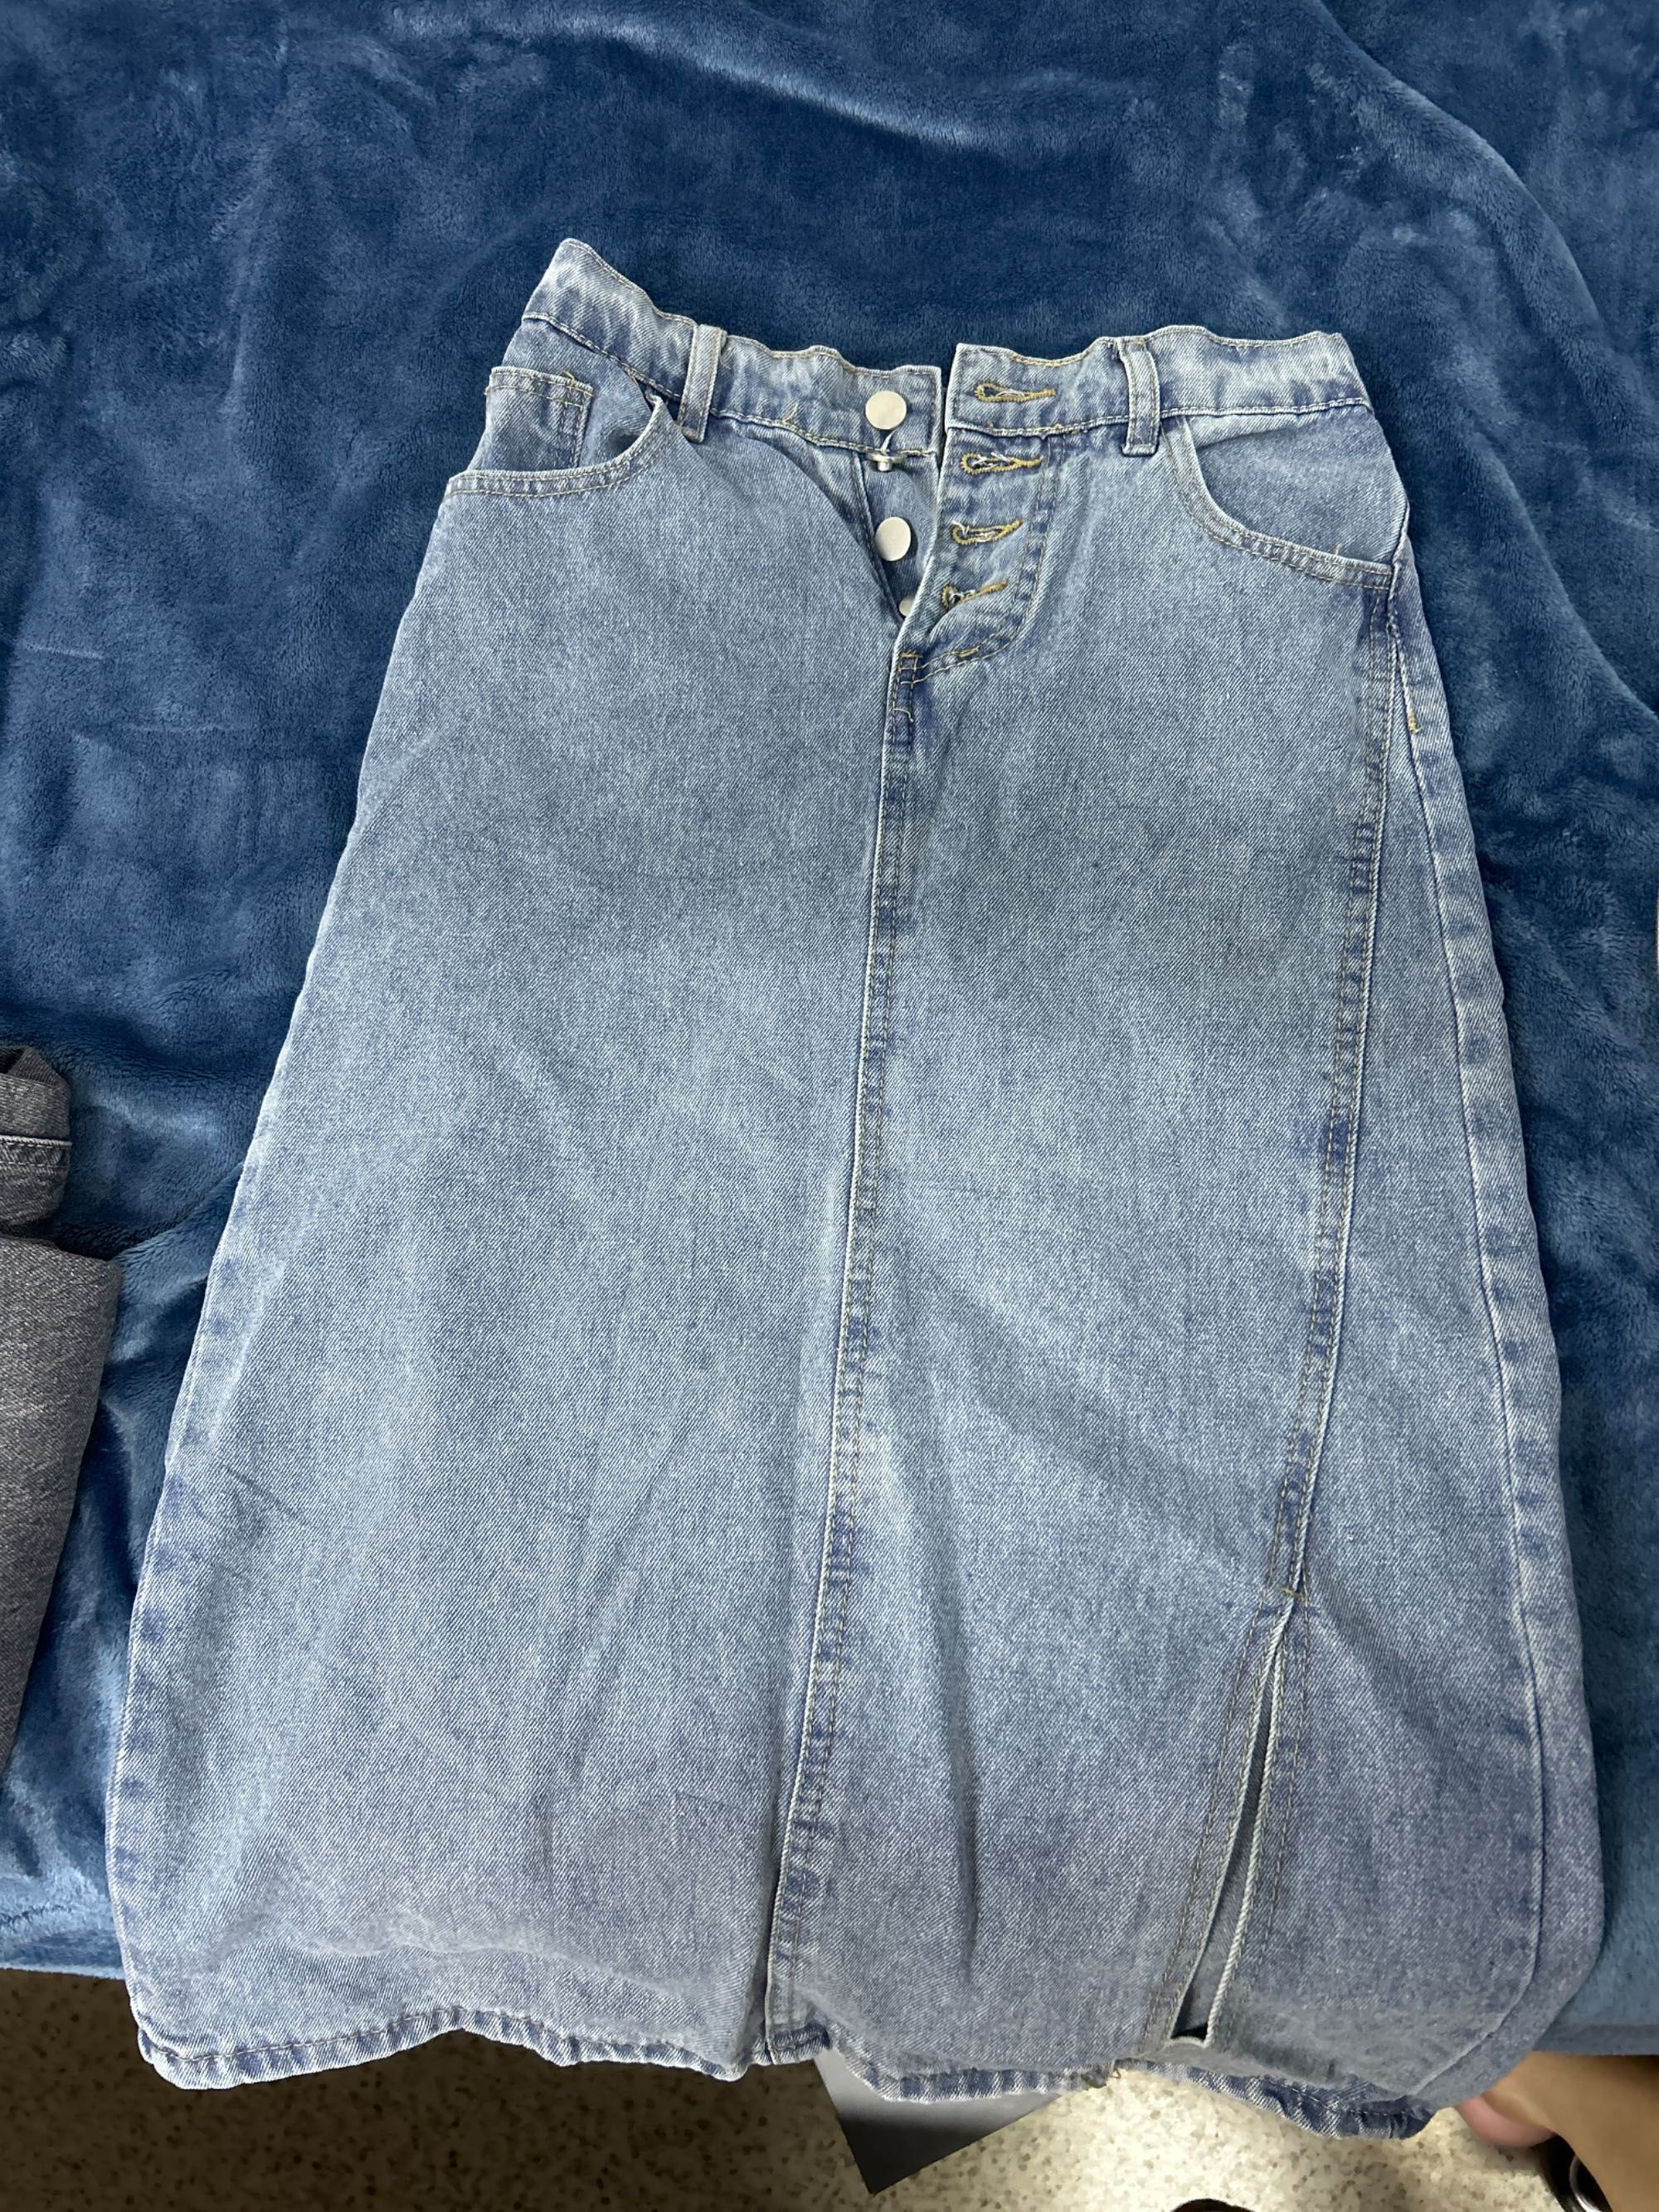 Продам джинсовую юбку размер S-M